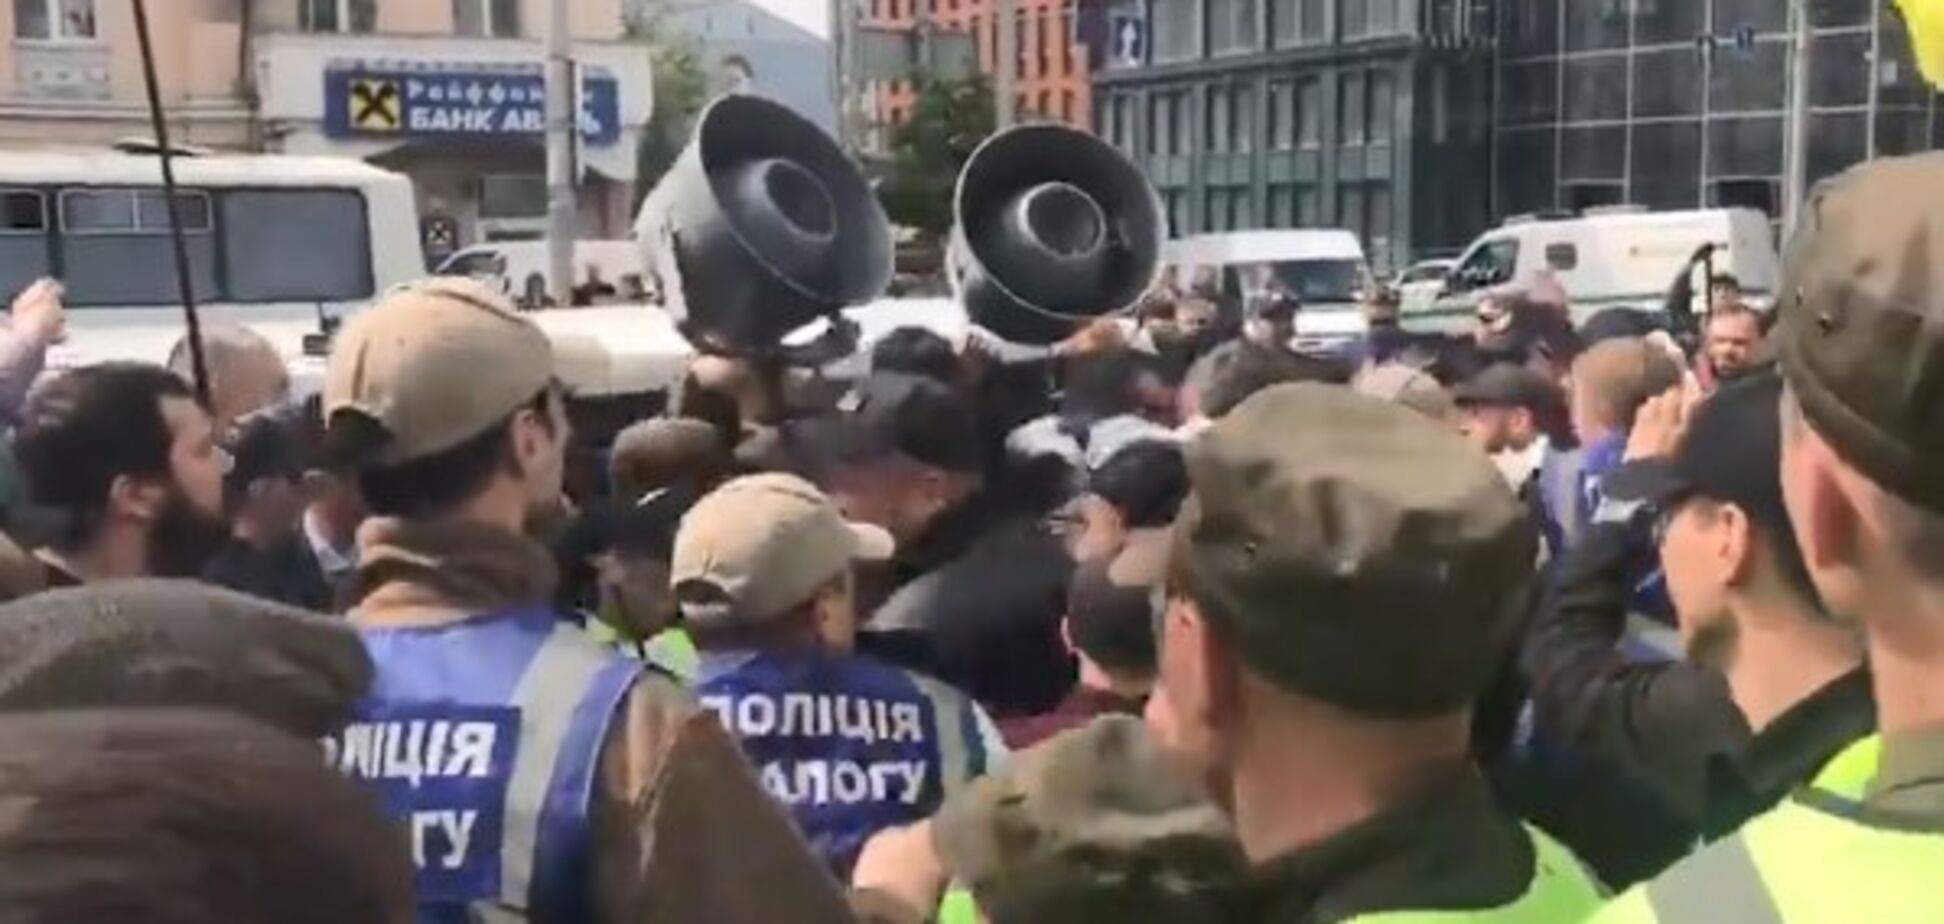 В Киеве на митинге подрались 'Нацкорпус' и сторонники БПП: видео потасовки 